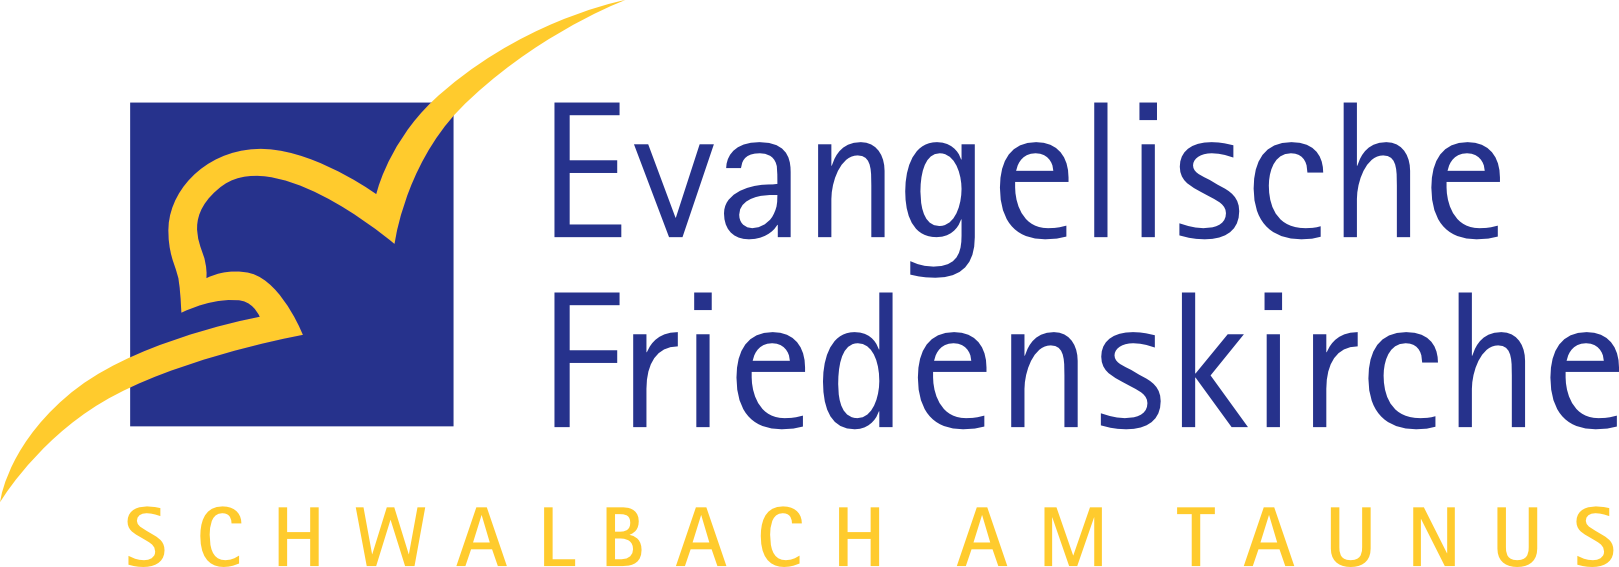 Evangelische Friedenskirche Schwalbach